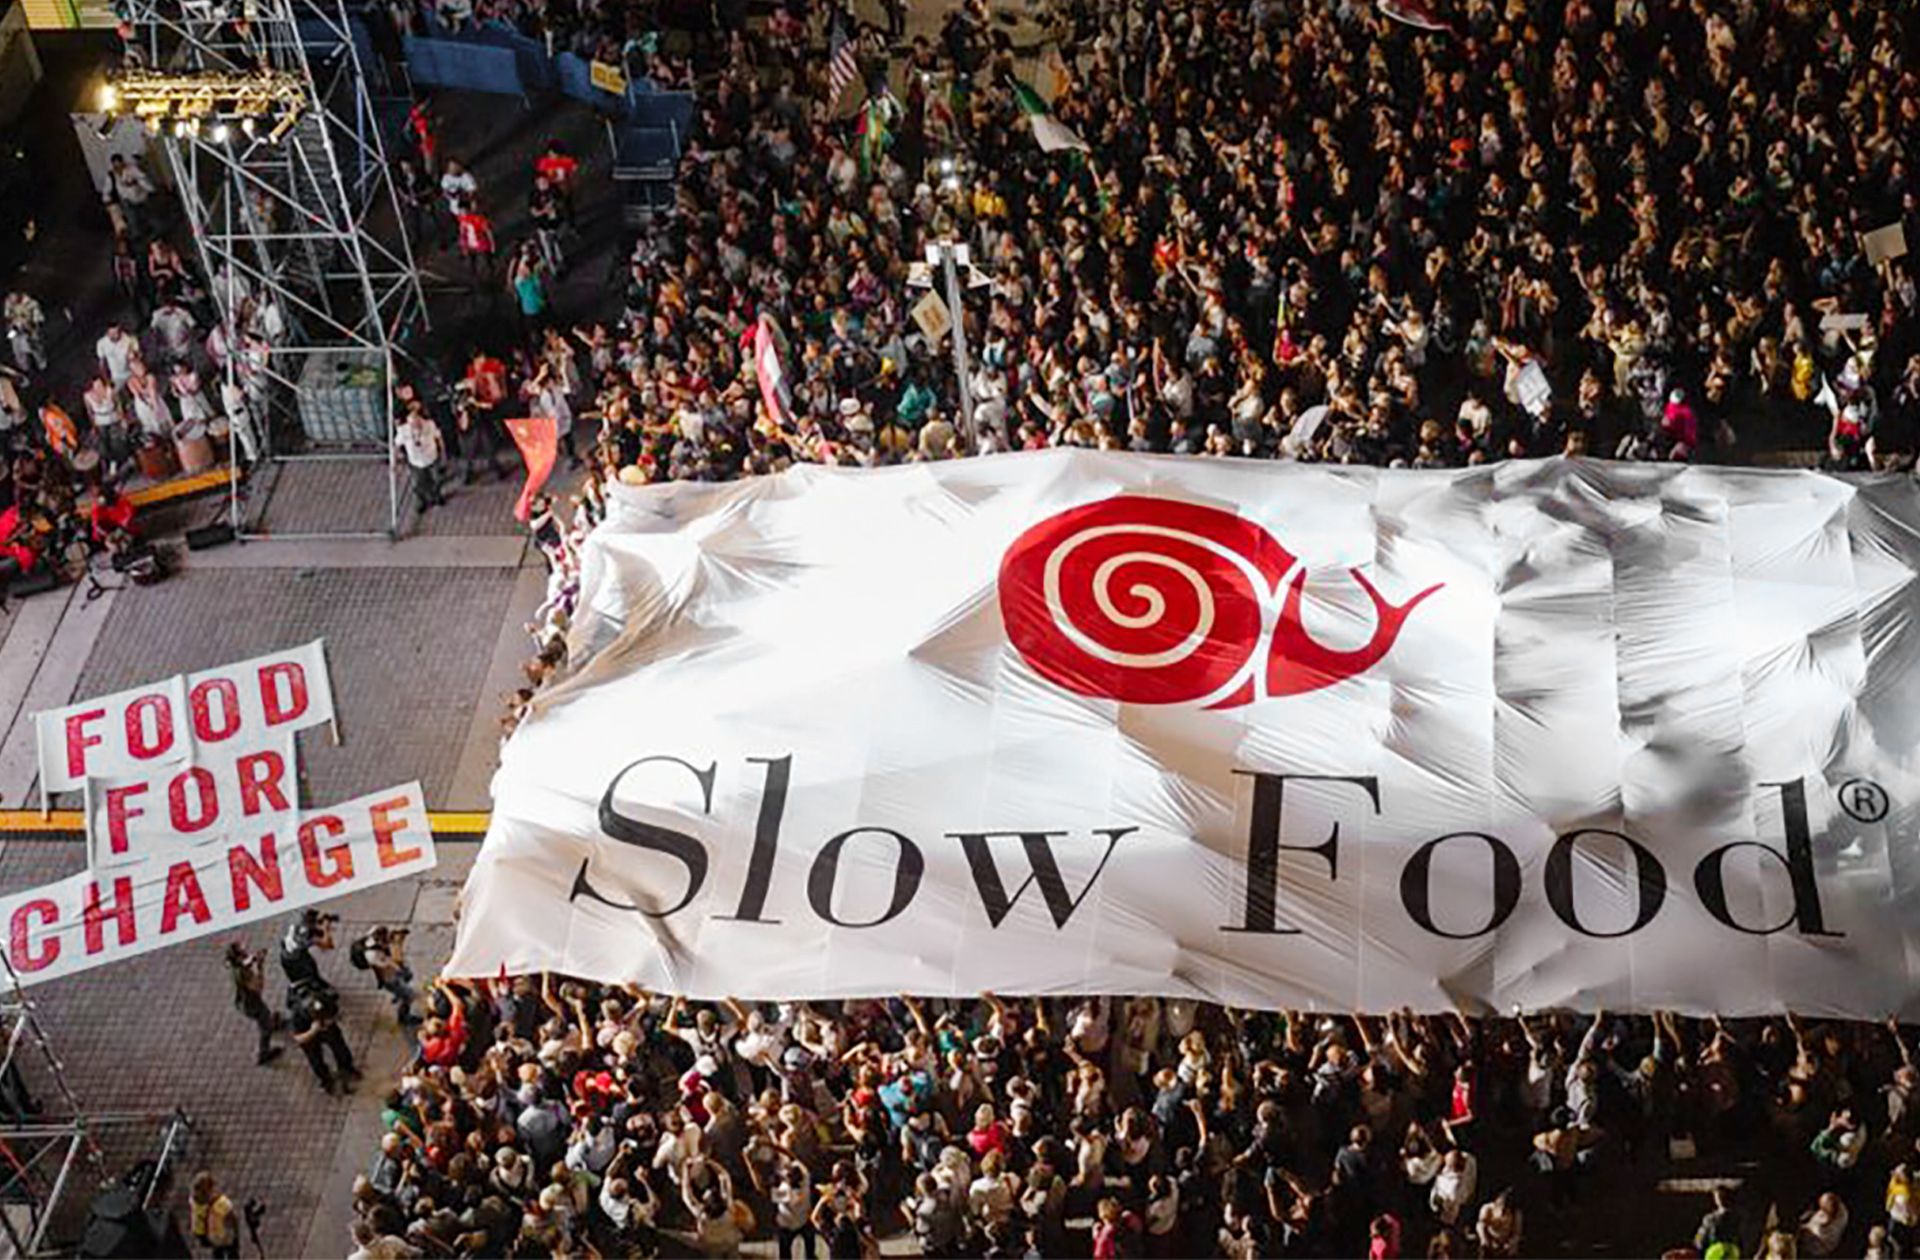 Slow Food è un movimento globale che promuove un sistema alimentare socialmente ed ecologicamente responsabile che protegge la diversità bioculturale e il benessere degli animali. Sin dalla sua fondazione nel 1986, Slow Food è diventata un'organizzazione che coinvolge milioni di persone in 170 paesi.